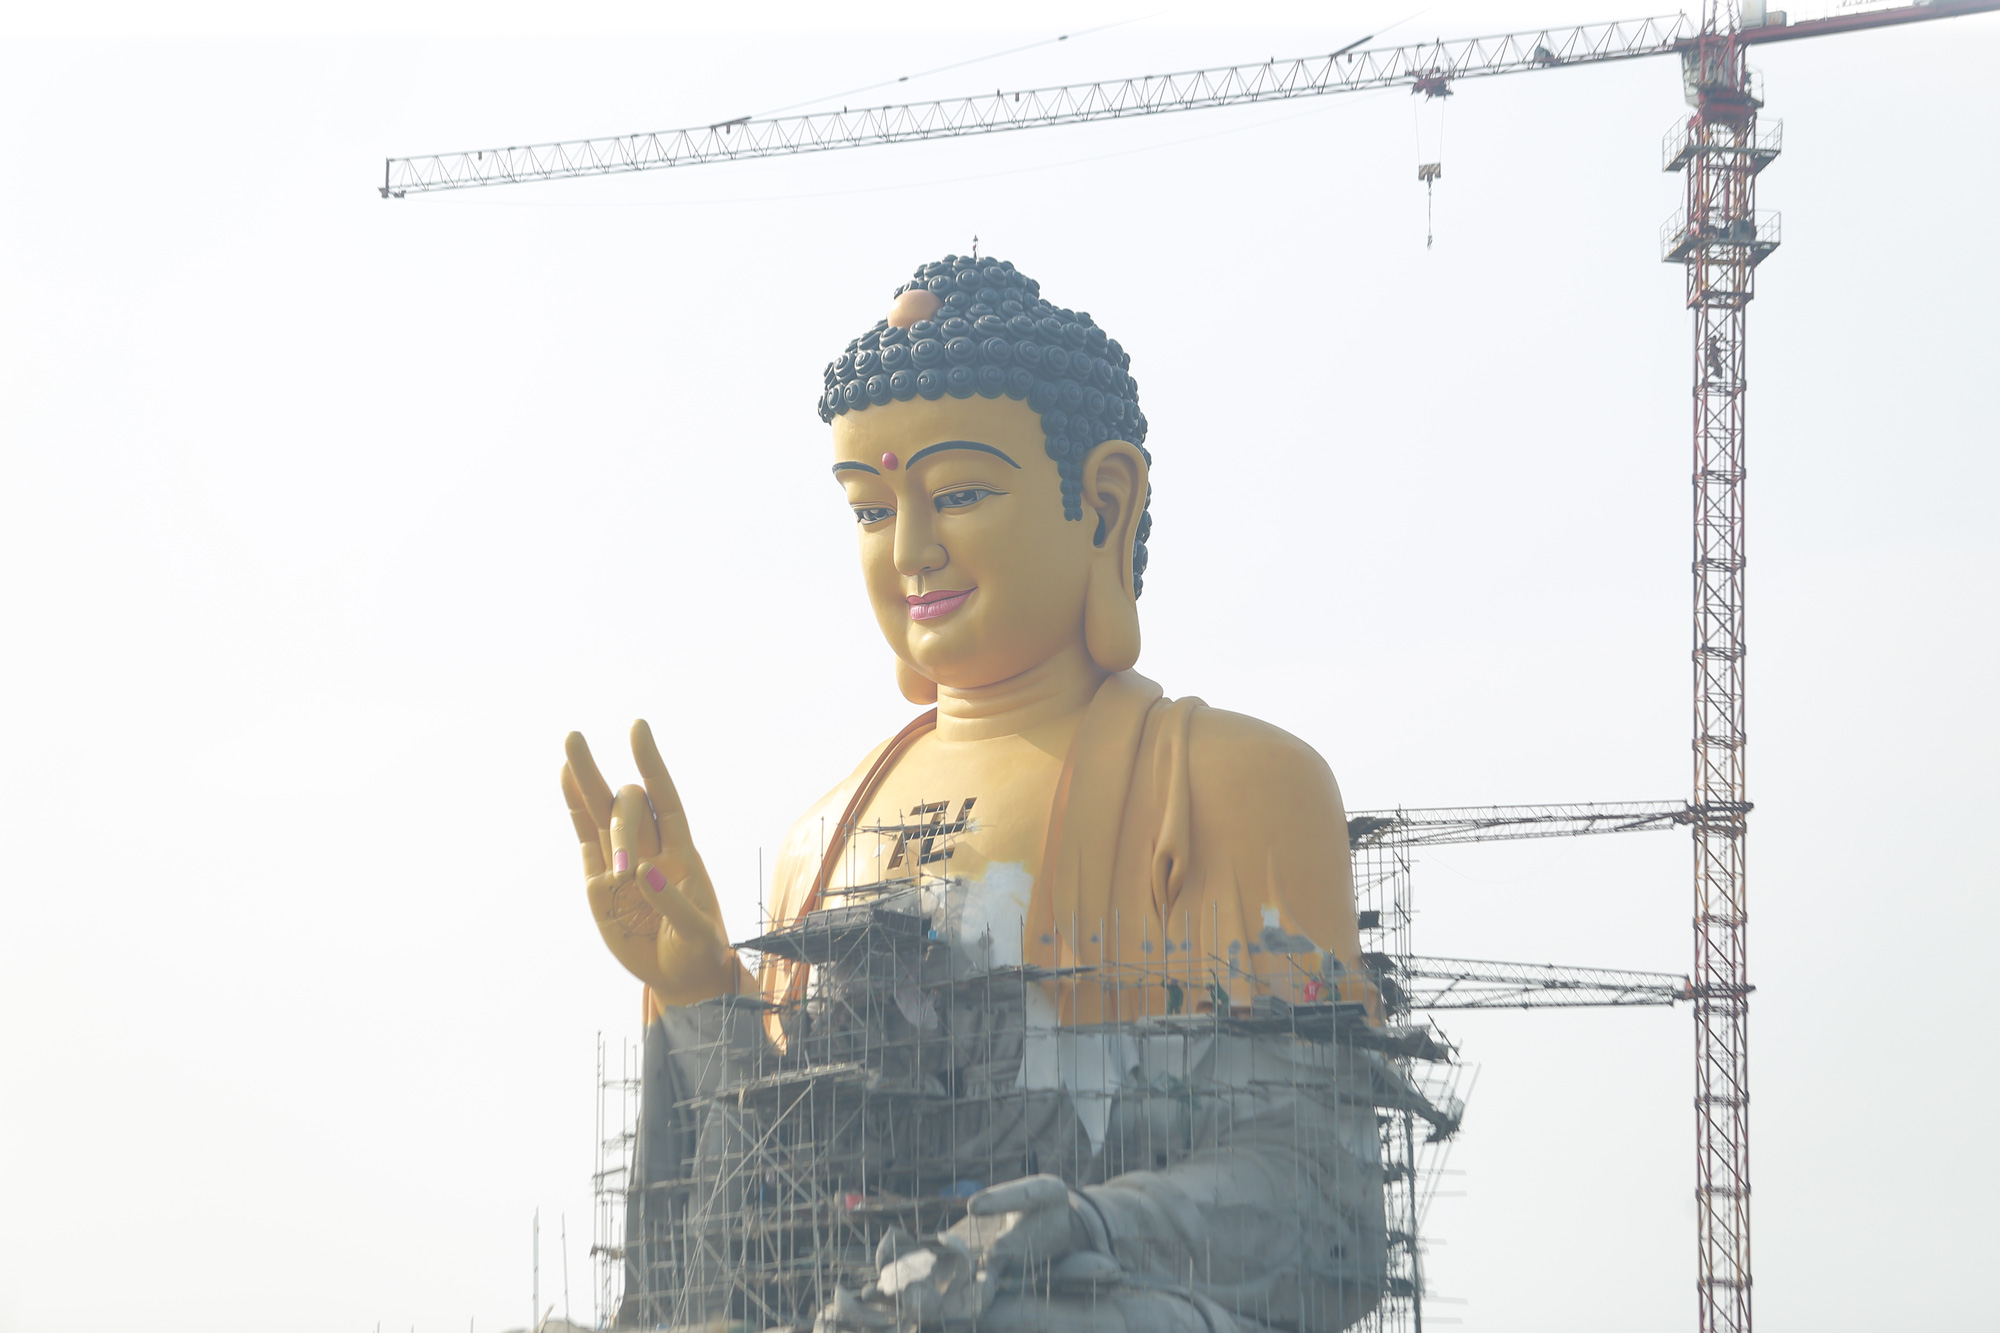 Với kích thước lớn nhất và chi tiết tuyệt vời, hình ảnh tượng Phật A Di Đà được hiển thị tại địa điểm này sẽ khiến cho bạn cảm thấy kính trọng và thích thú, khám phá những tình cảm và cảm nhận sâu sắc về tôn giáo và văn hóa của người Việt Nam.